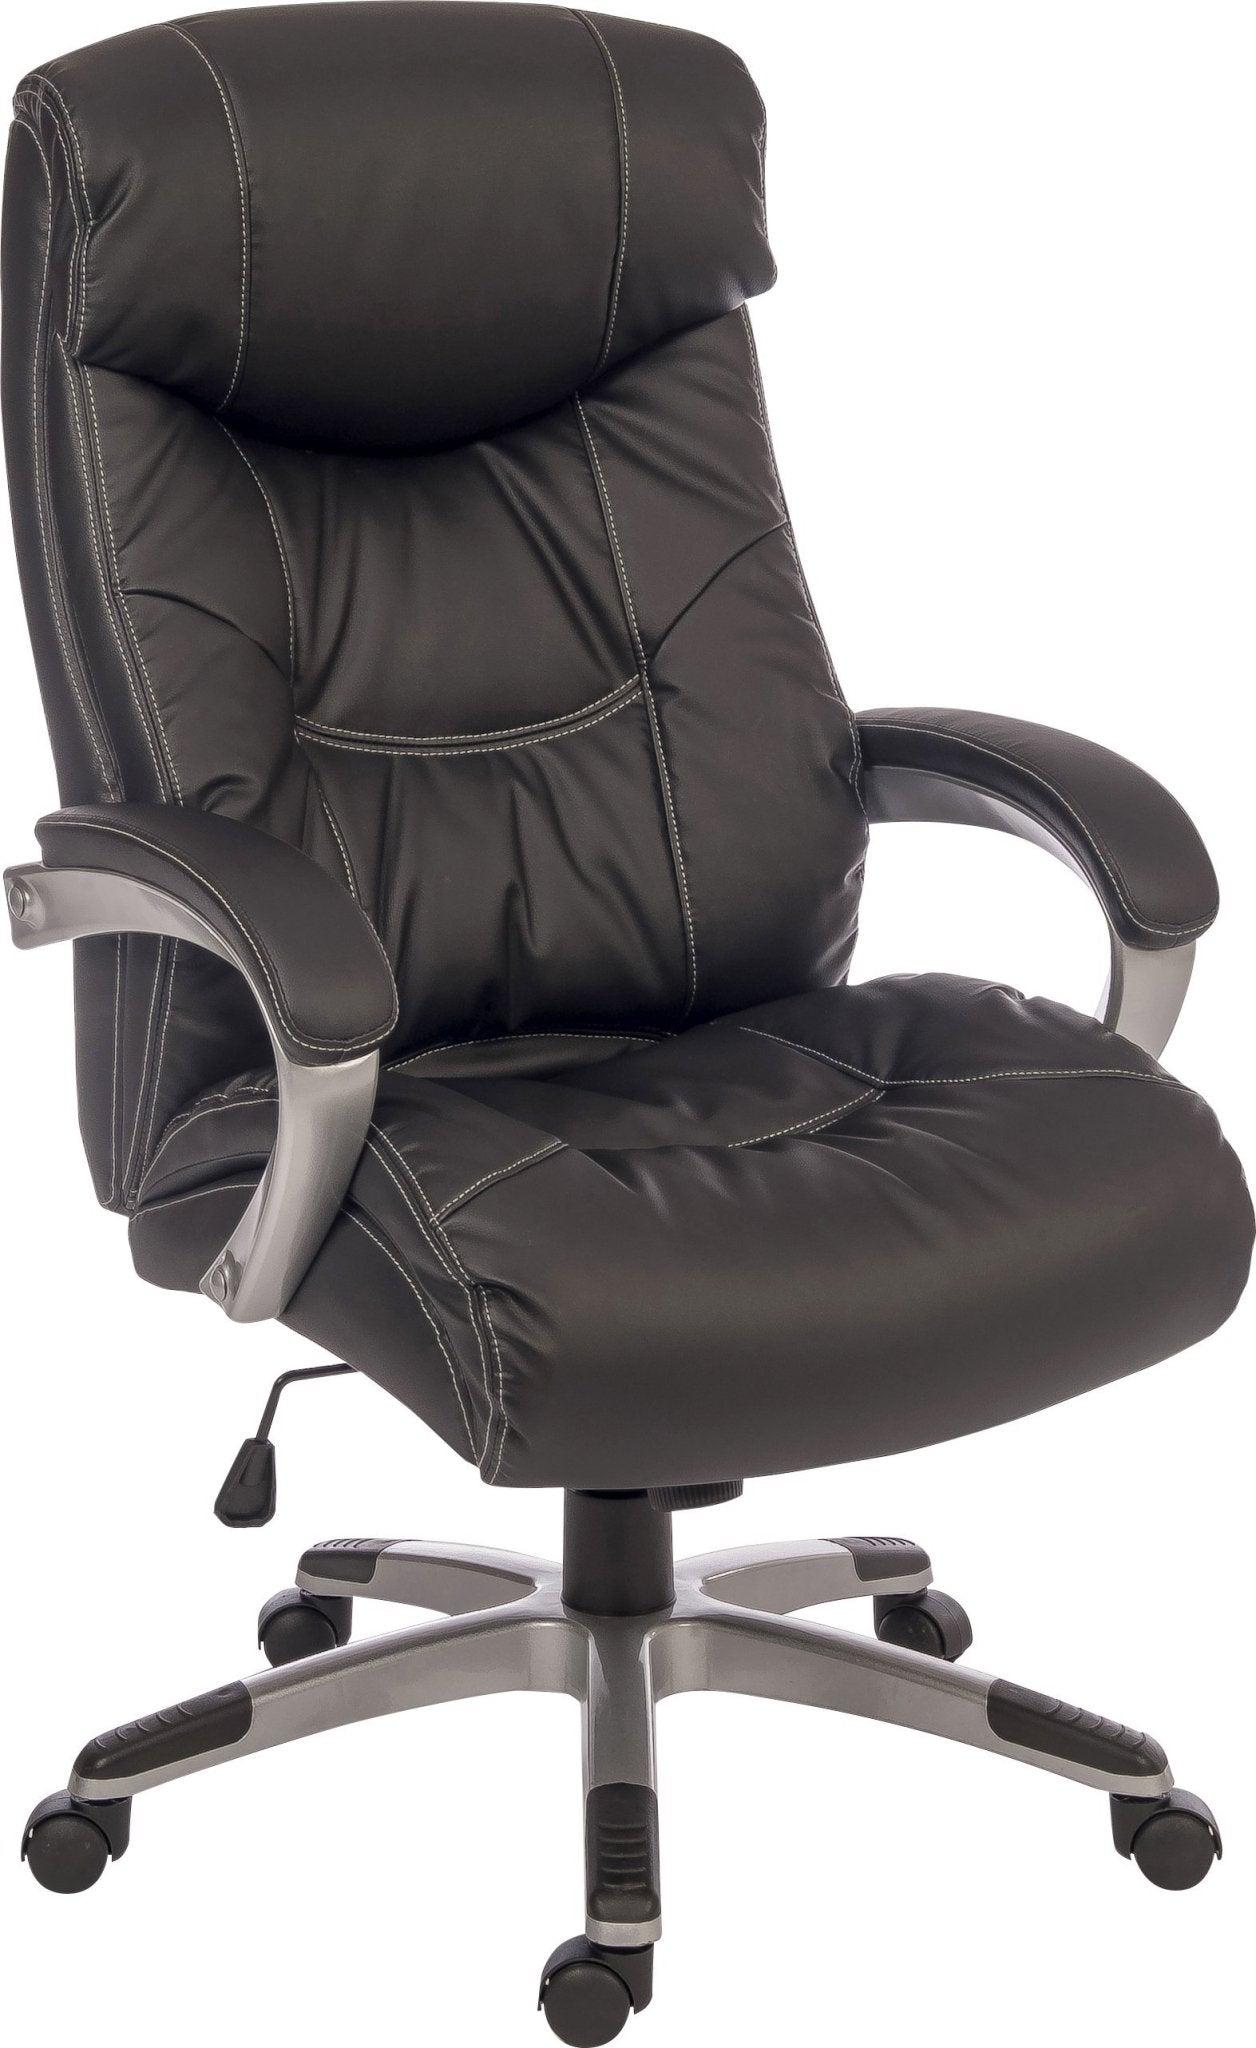 Siesta office chair - crimblefest furniture - image 1